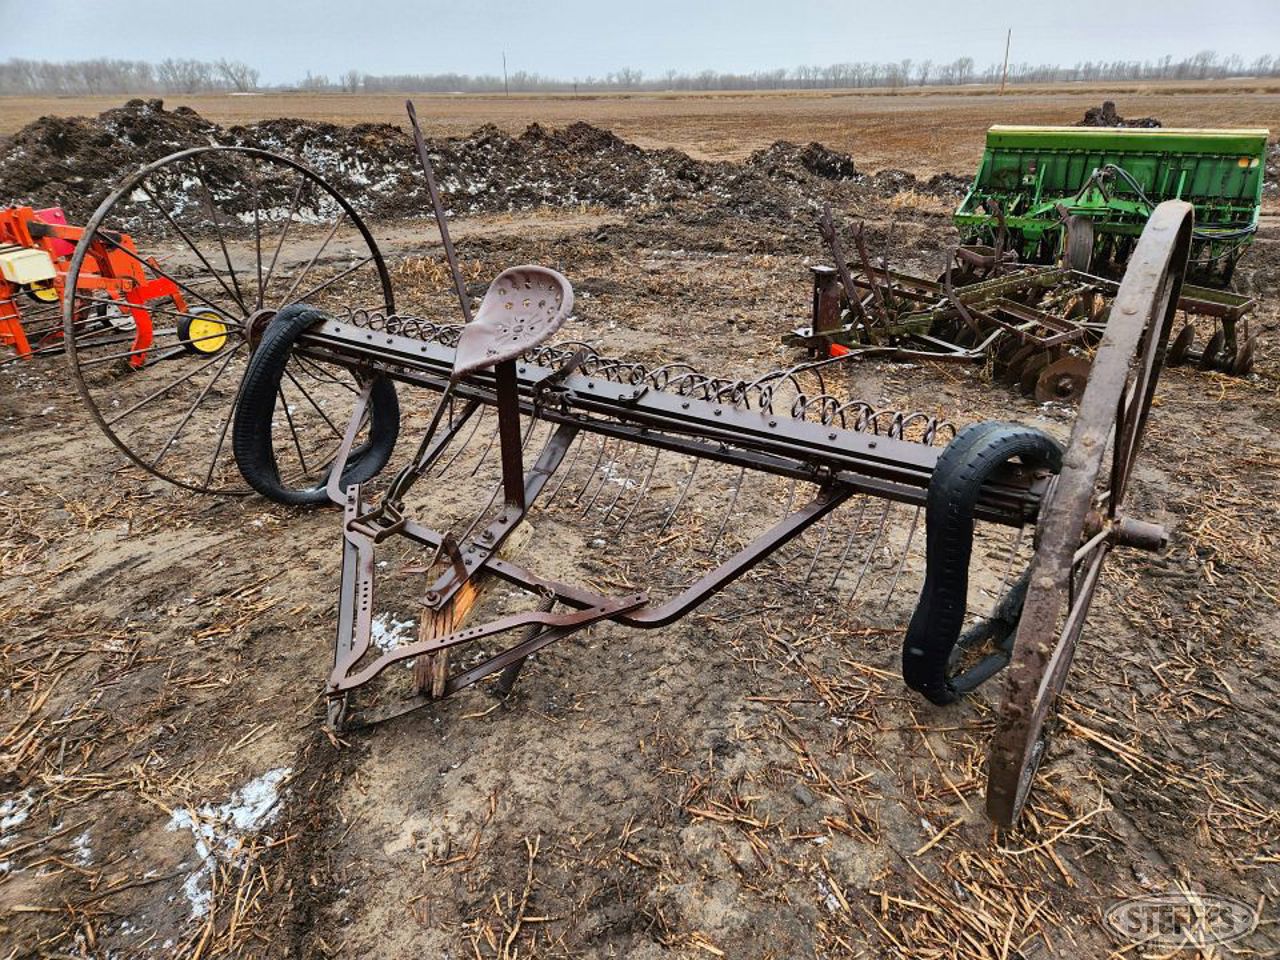 Antique dump rake